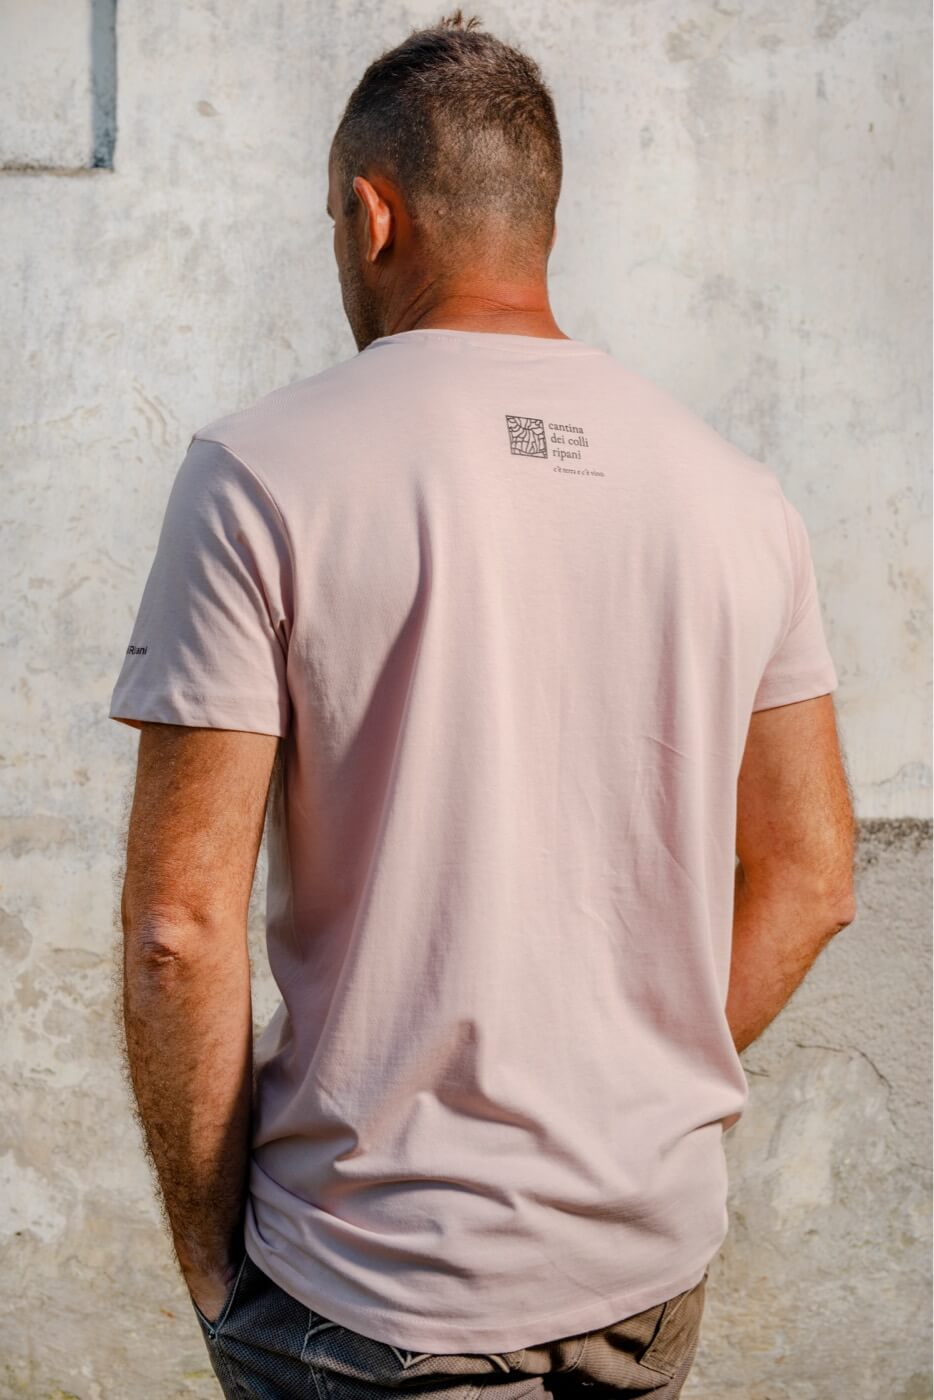 Ciauscolo and Pecorino T-shirt